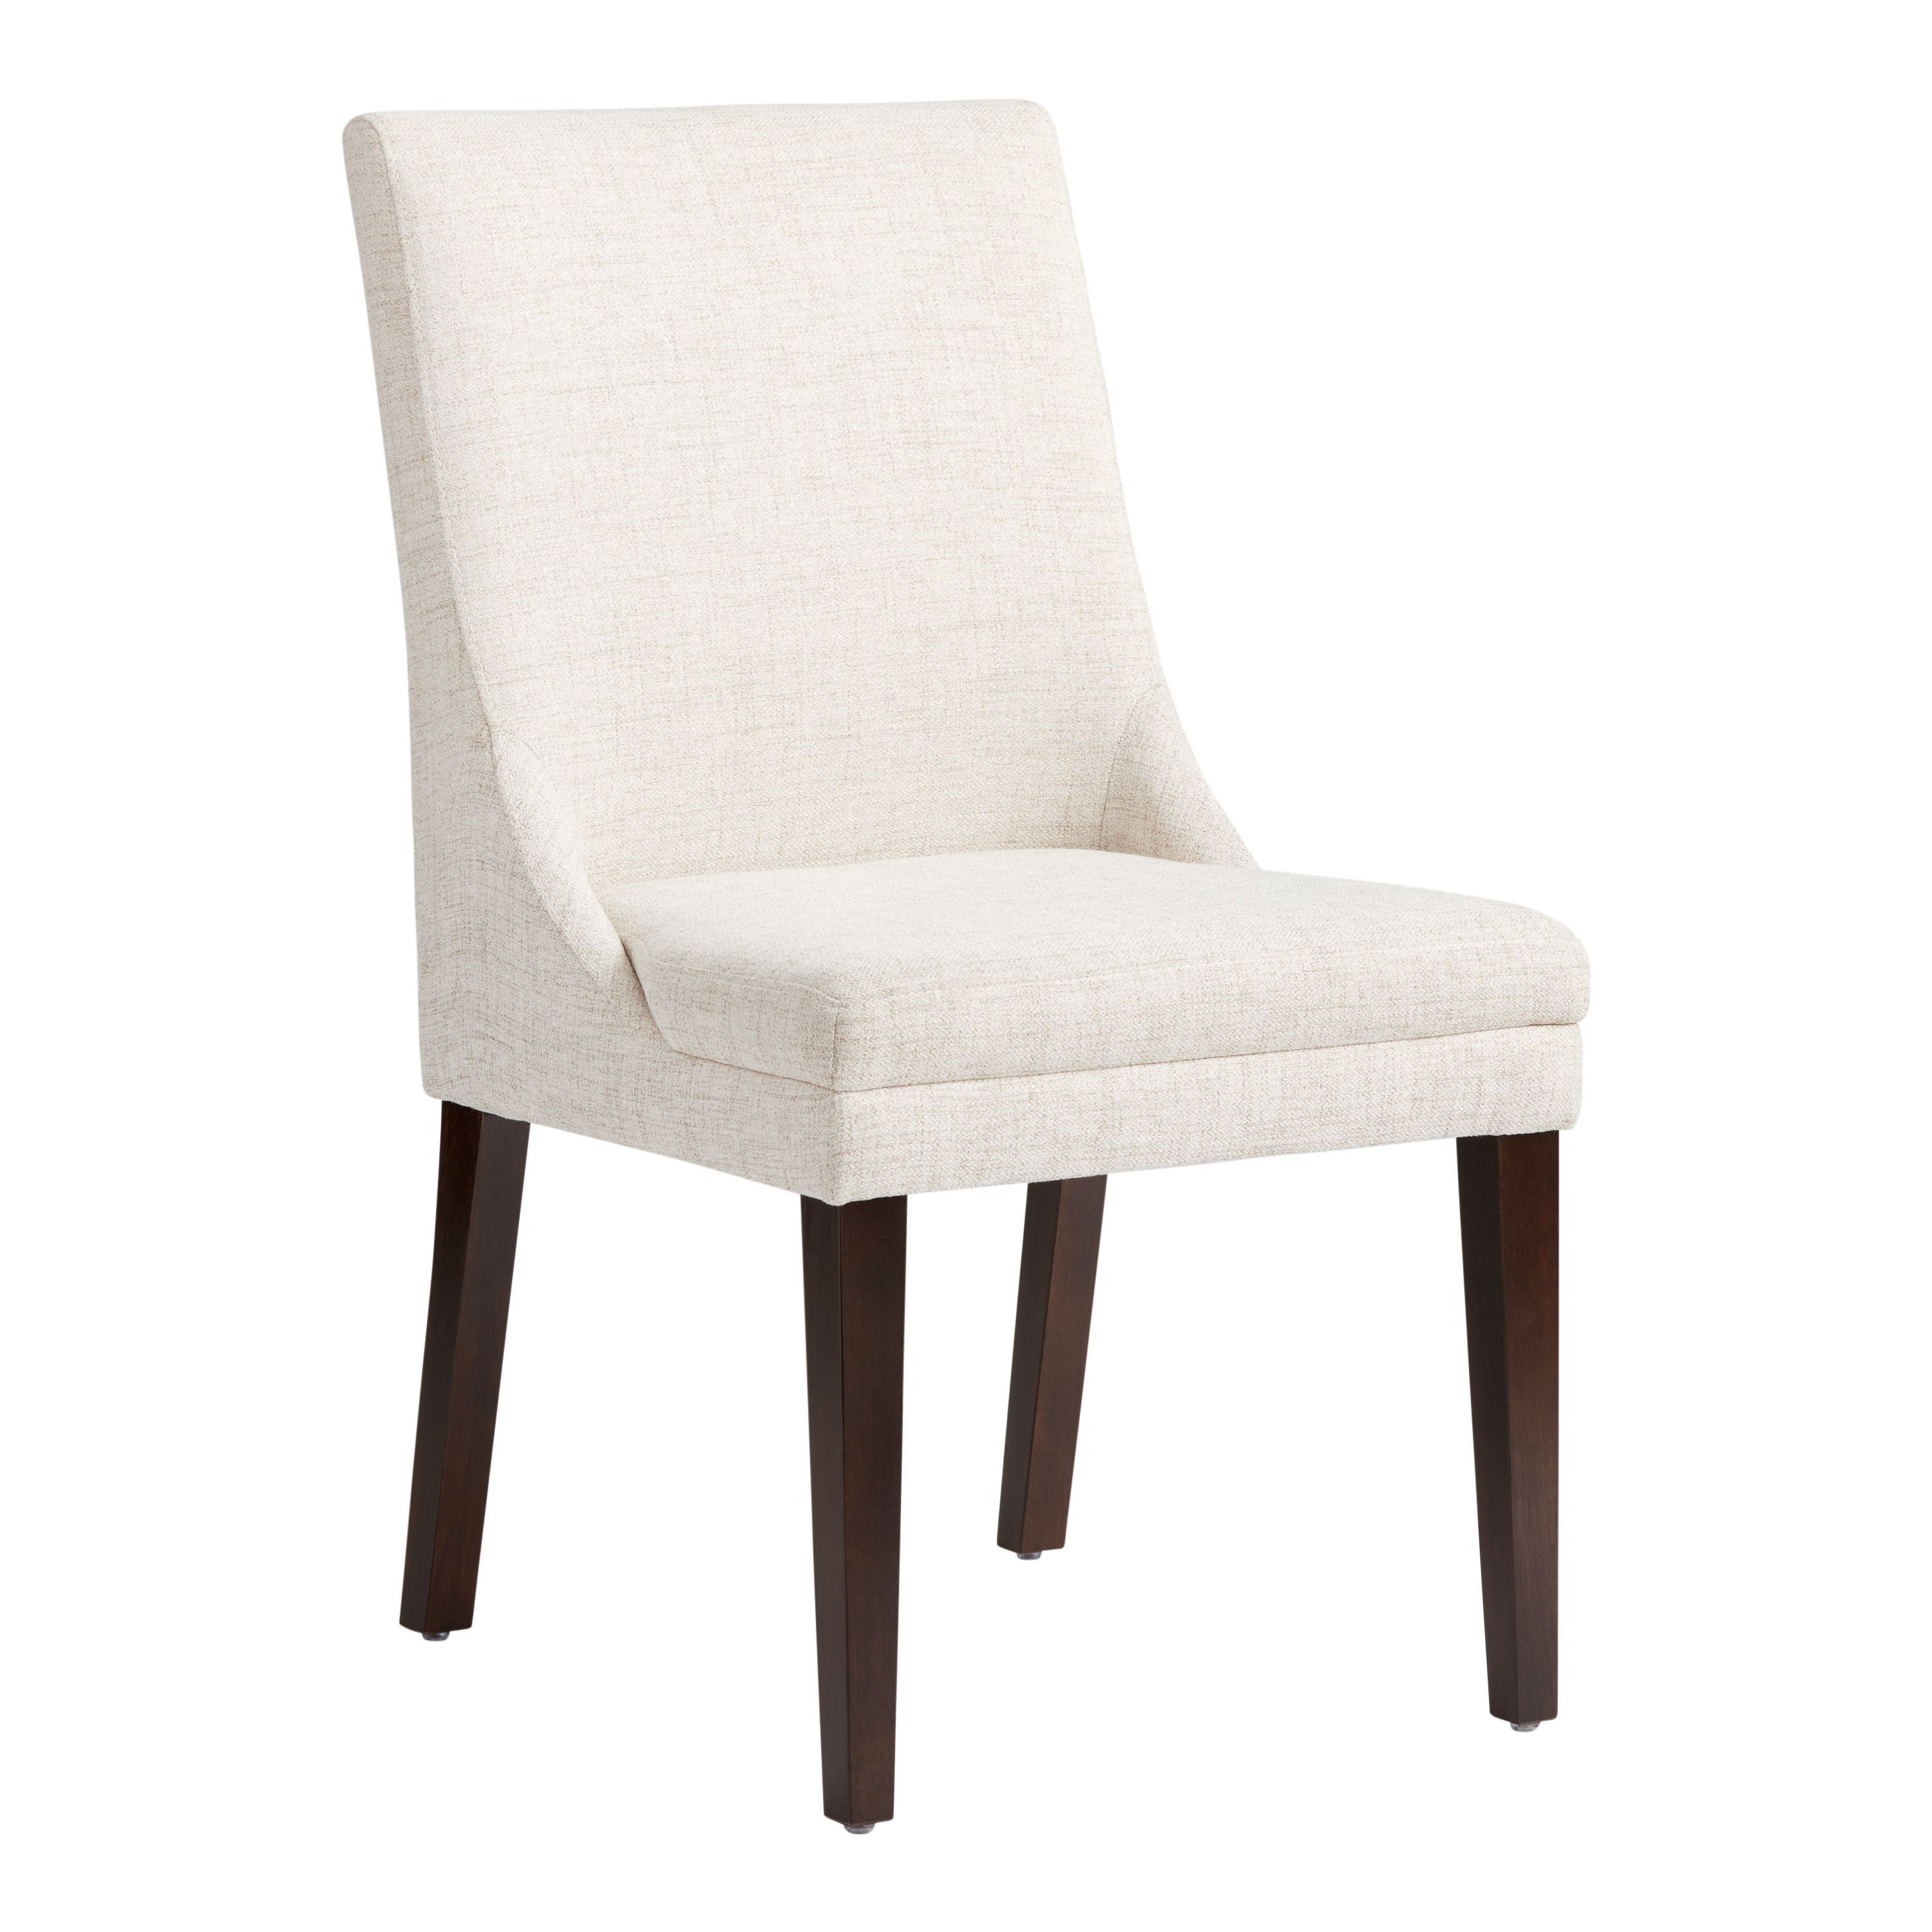 Judah Cream Upholstered Dining Chair Set of 2 | World Market